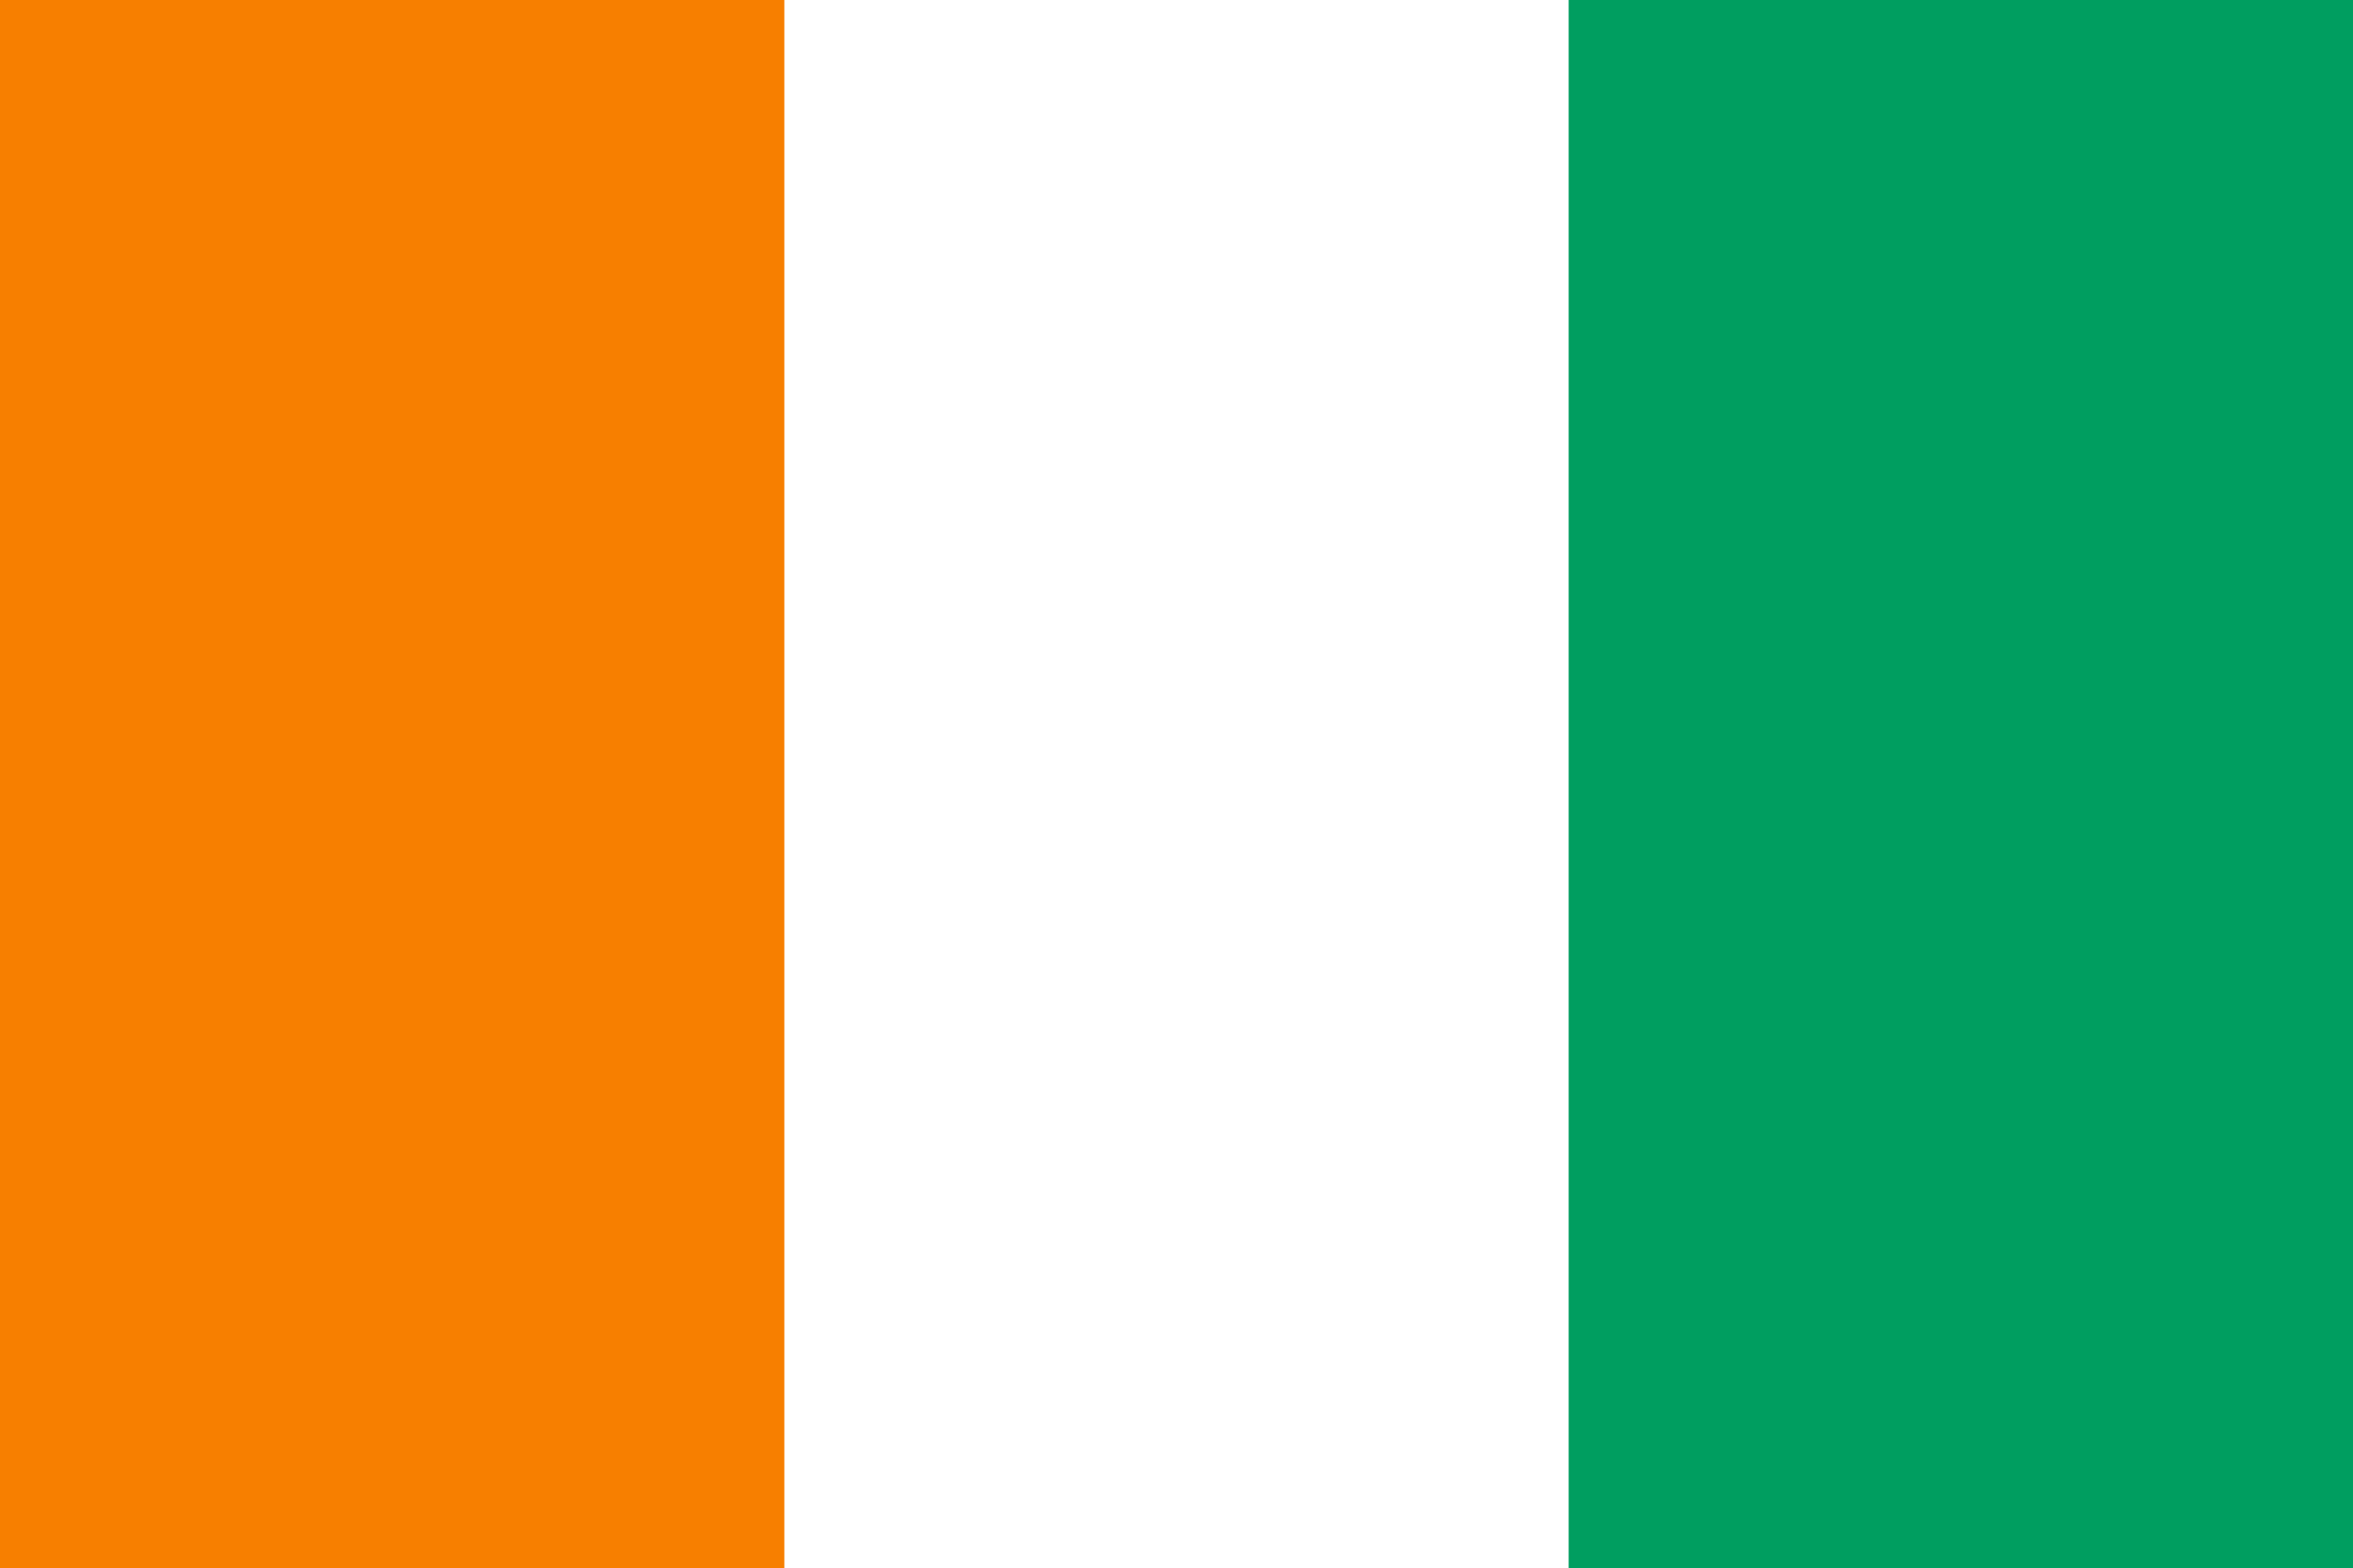 Côte d'Ivoire Flag Vector - Free Download